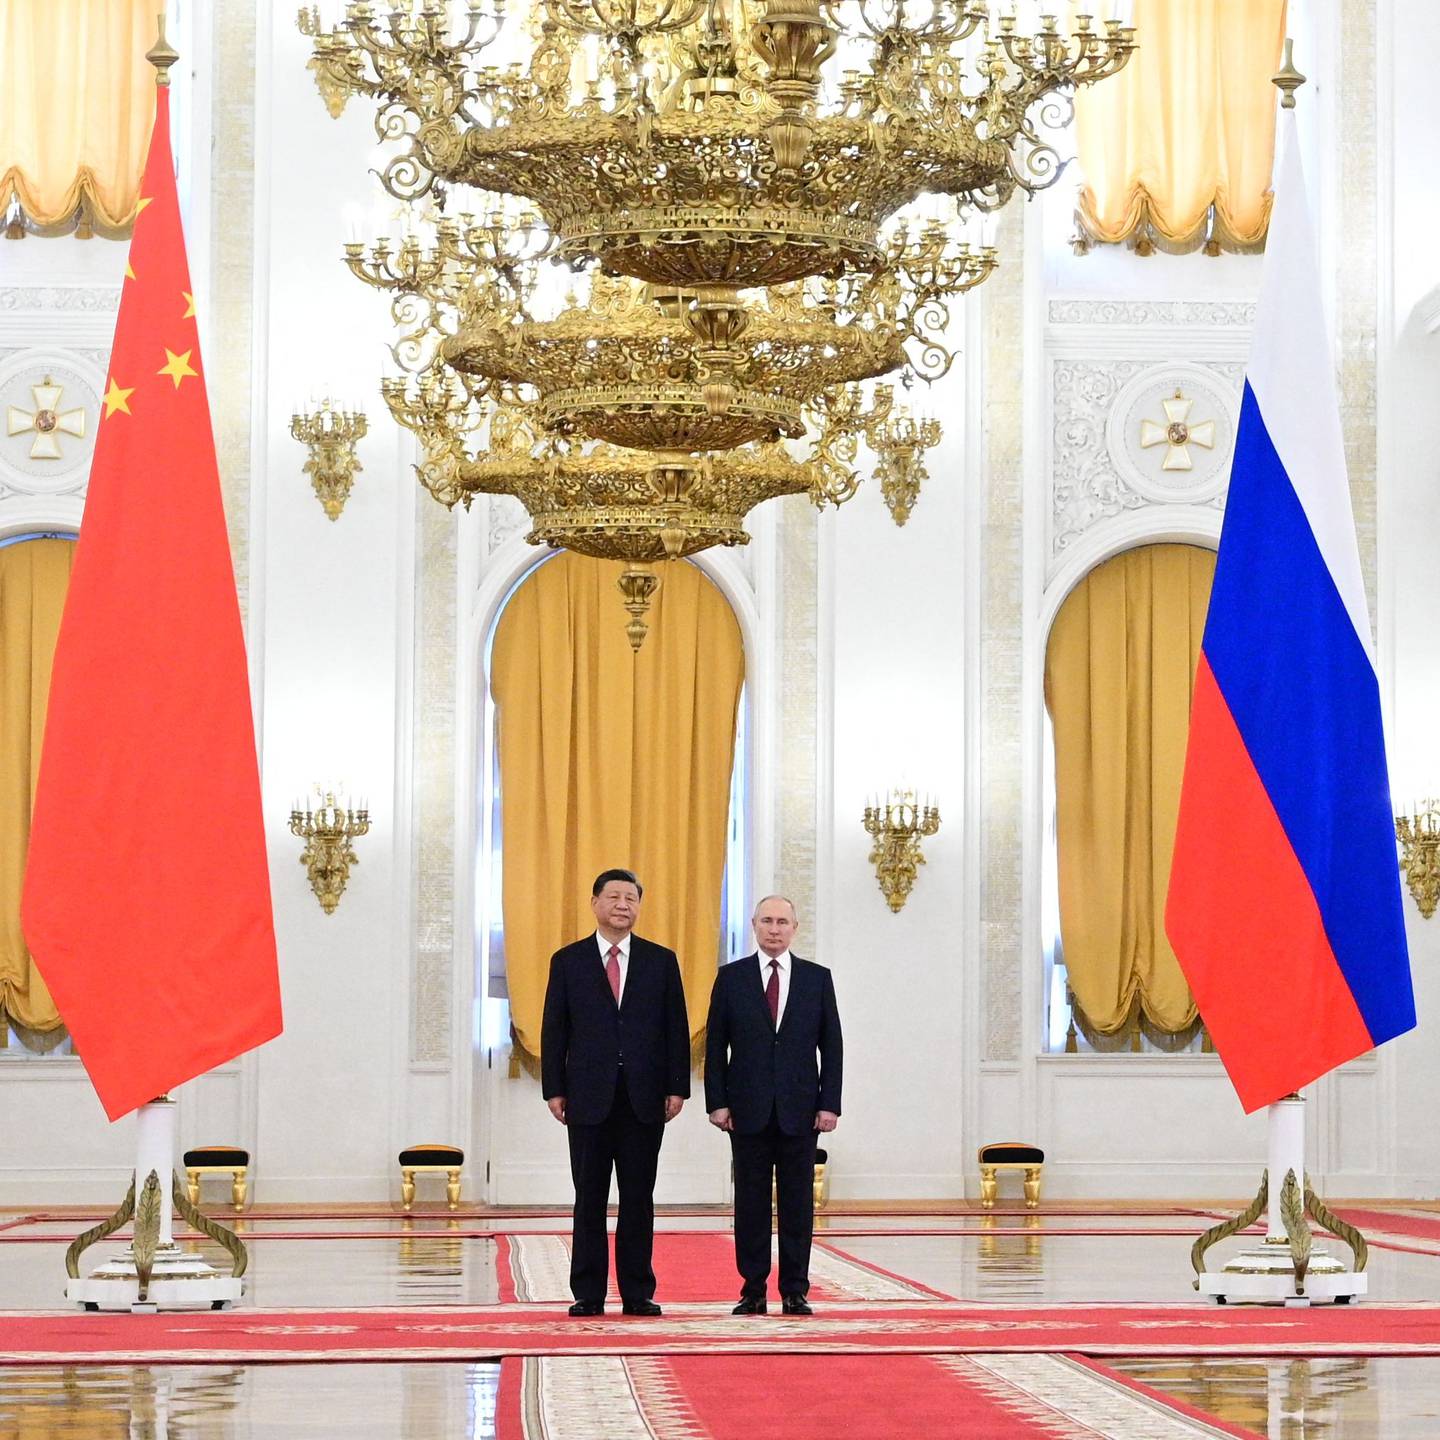 Disponible Turista Letrista Inicia la negociación entre Putin y Xi en Rusia